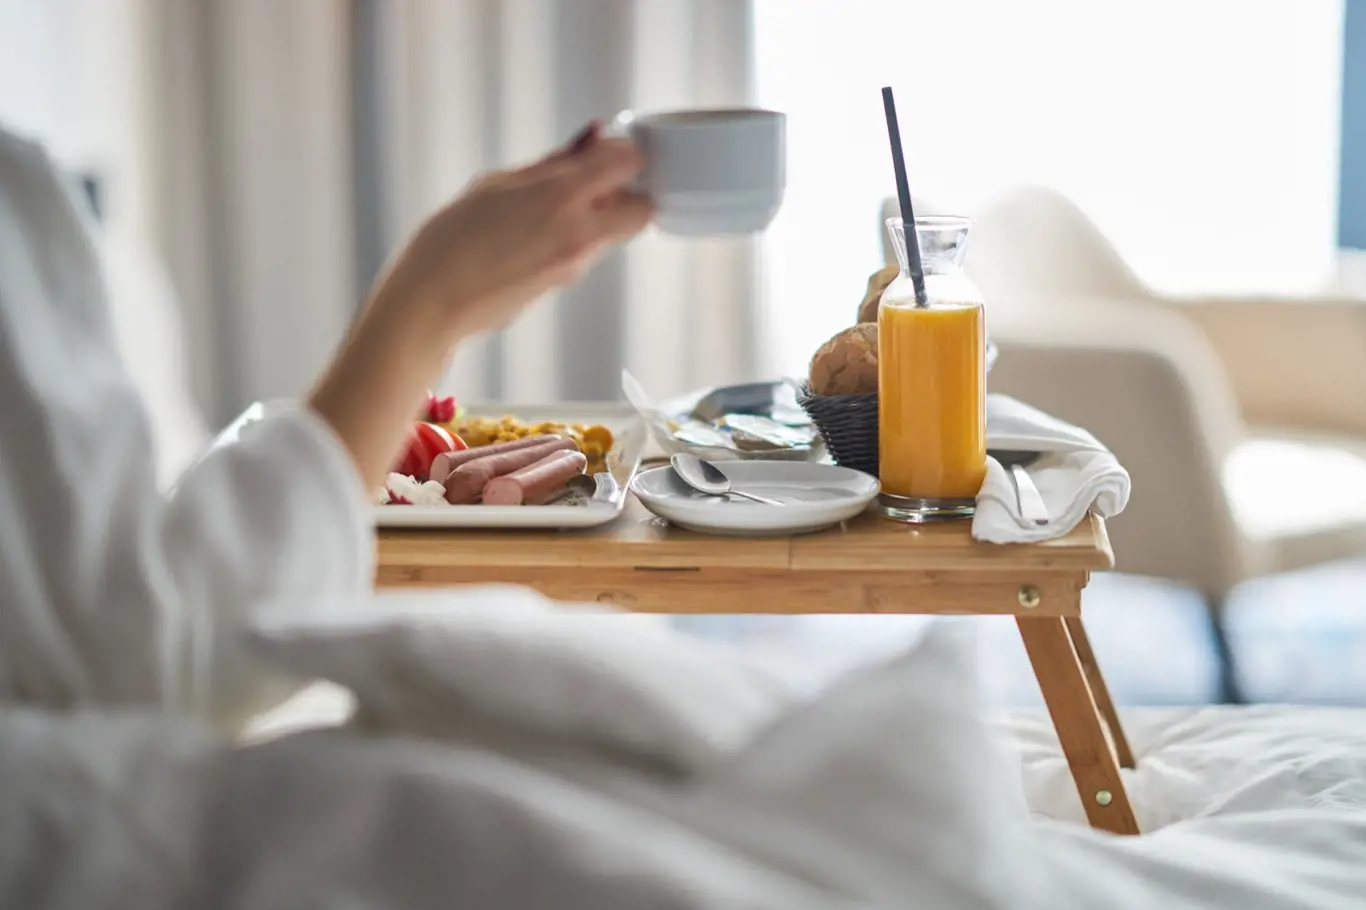 Je snídaně v posteli romantická nebo nechutná?